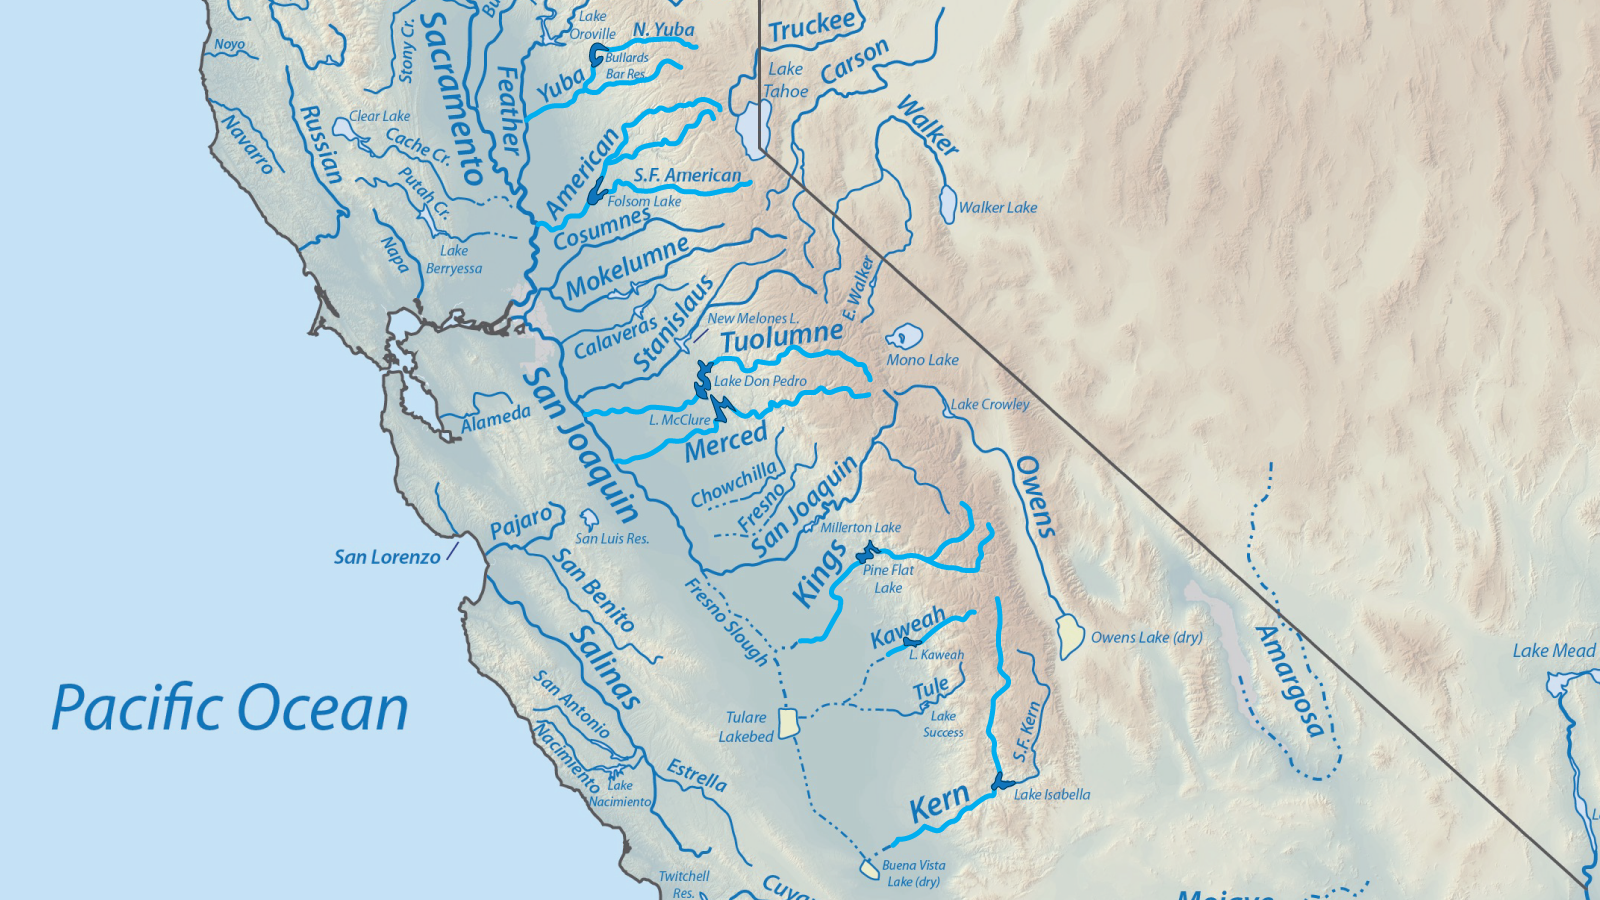 Map of California rivers